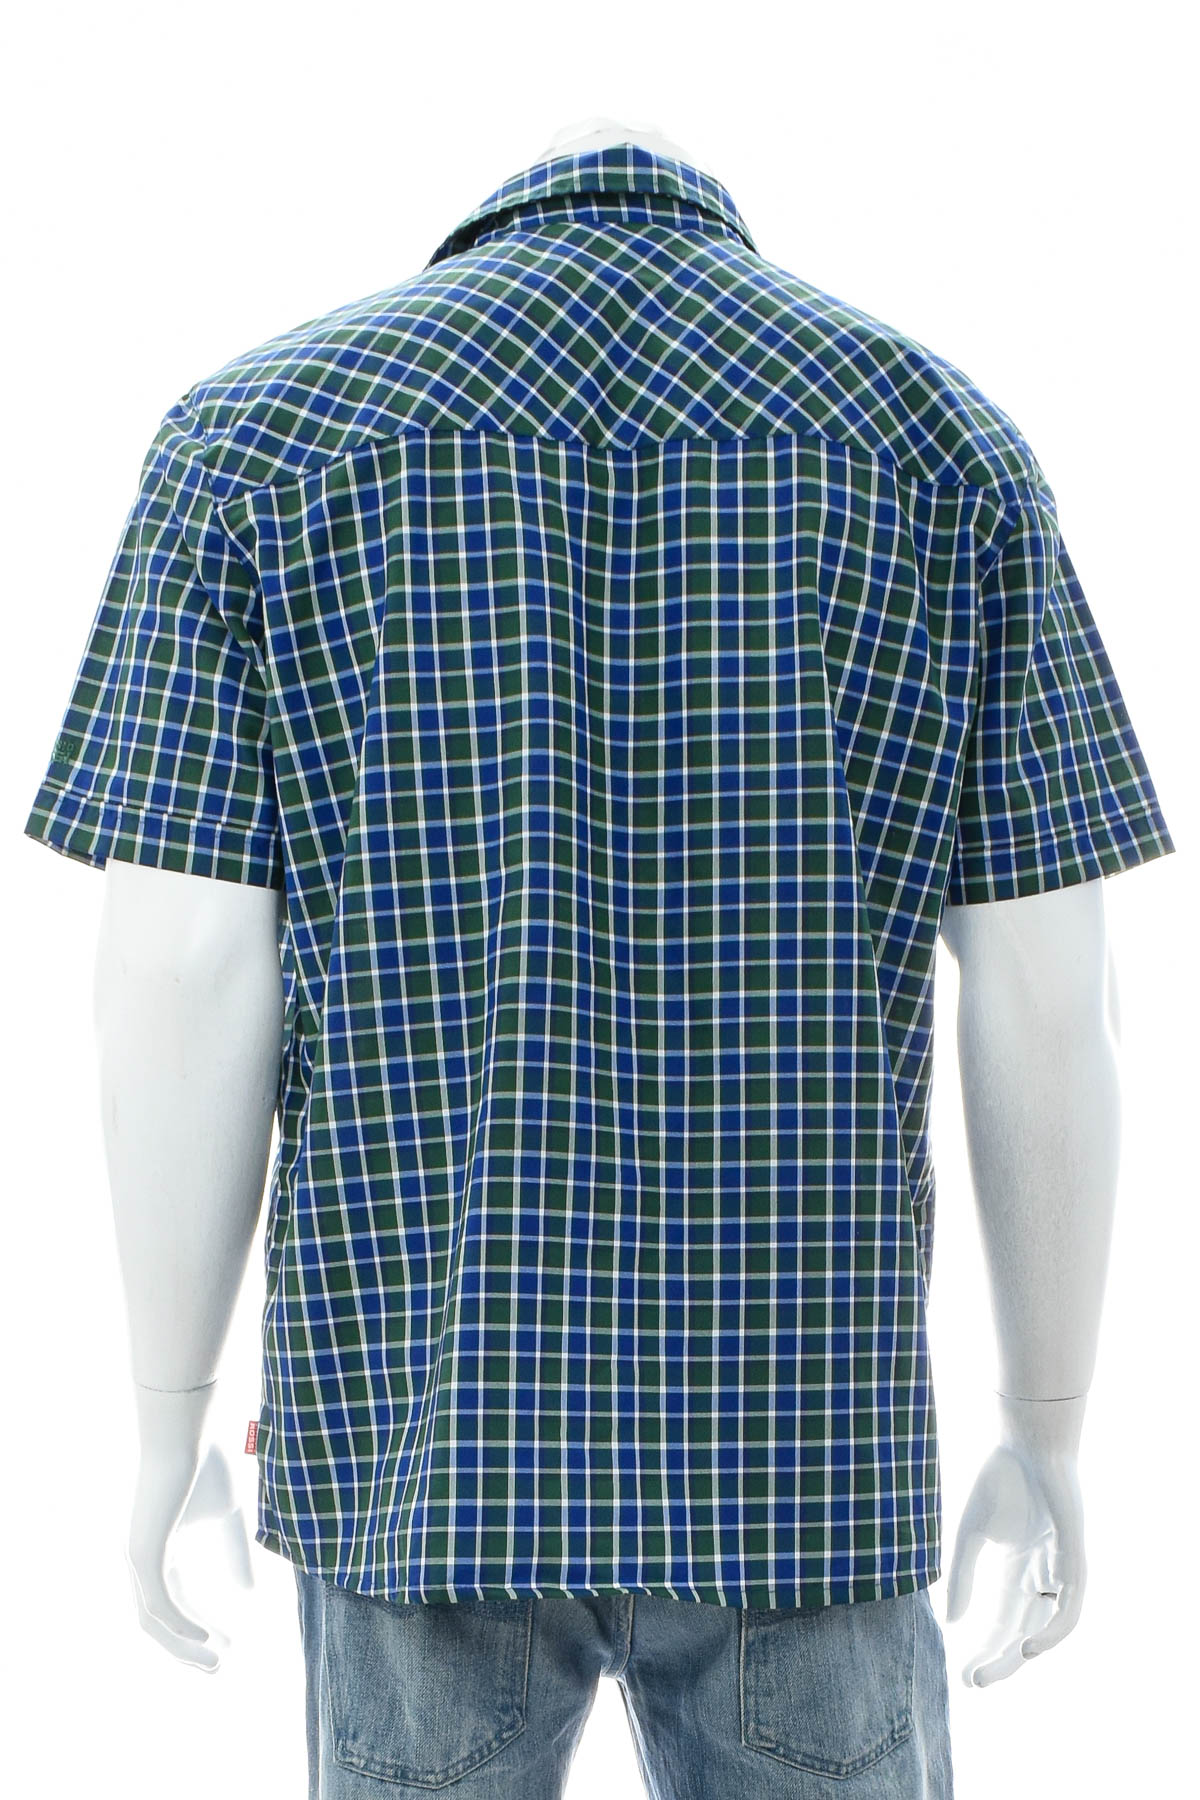 Men's shirt - Vittorio Rossi - 1